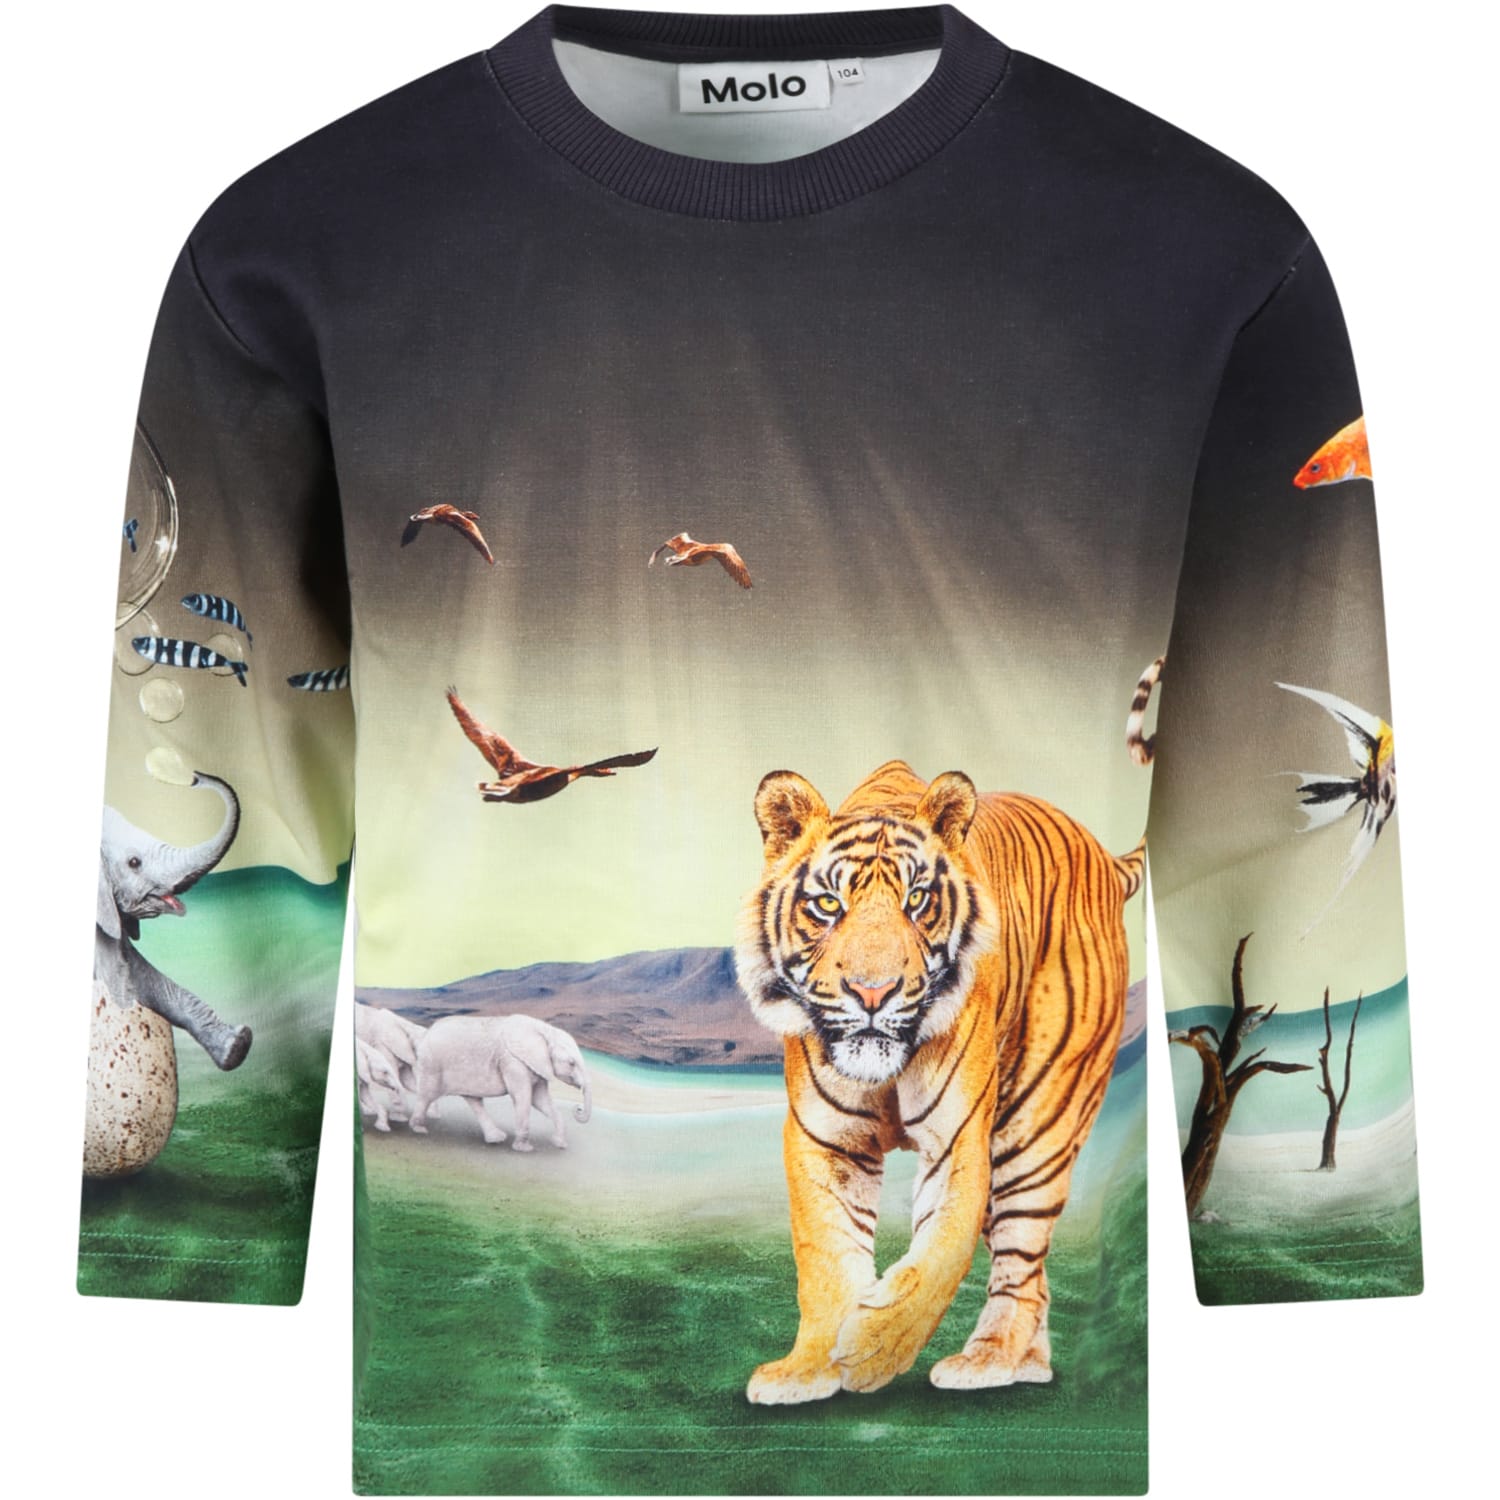 Molo Multicolor Sweatshirt For Boy With Tiger